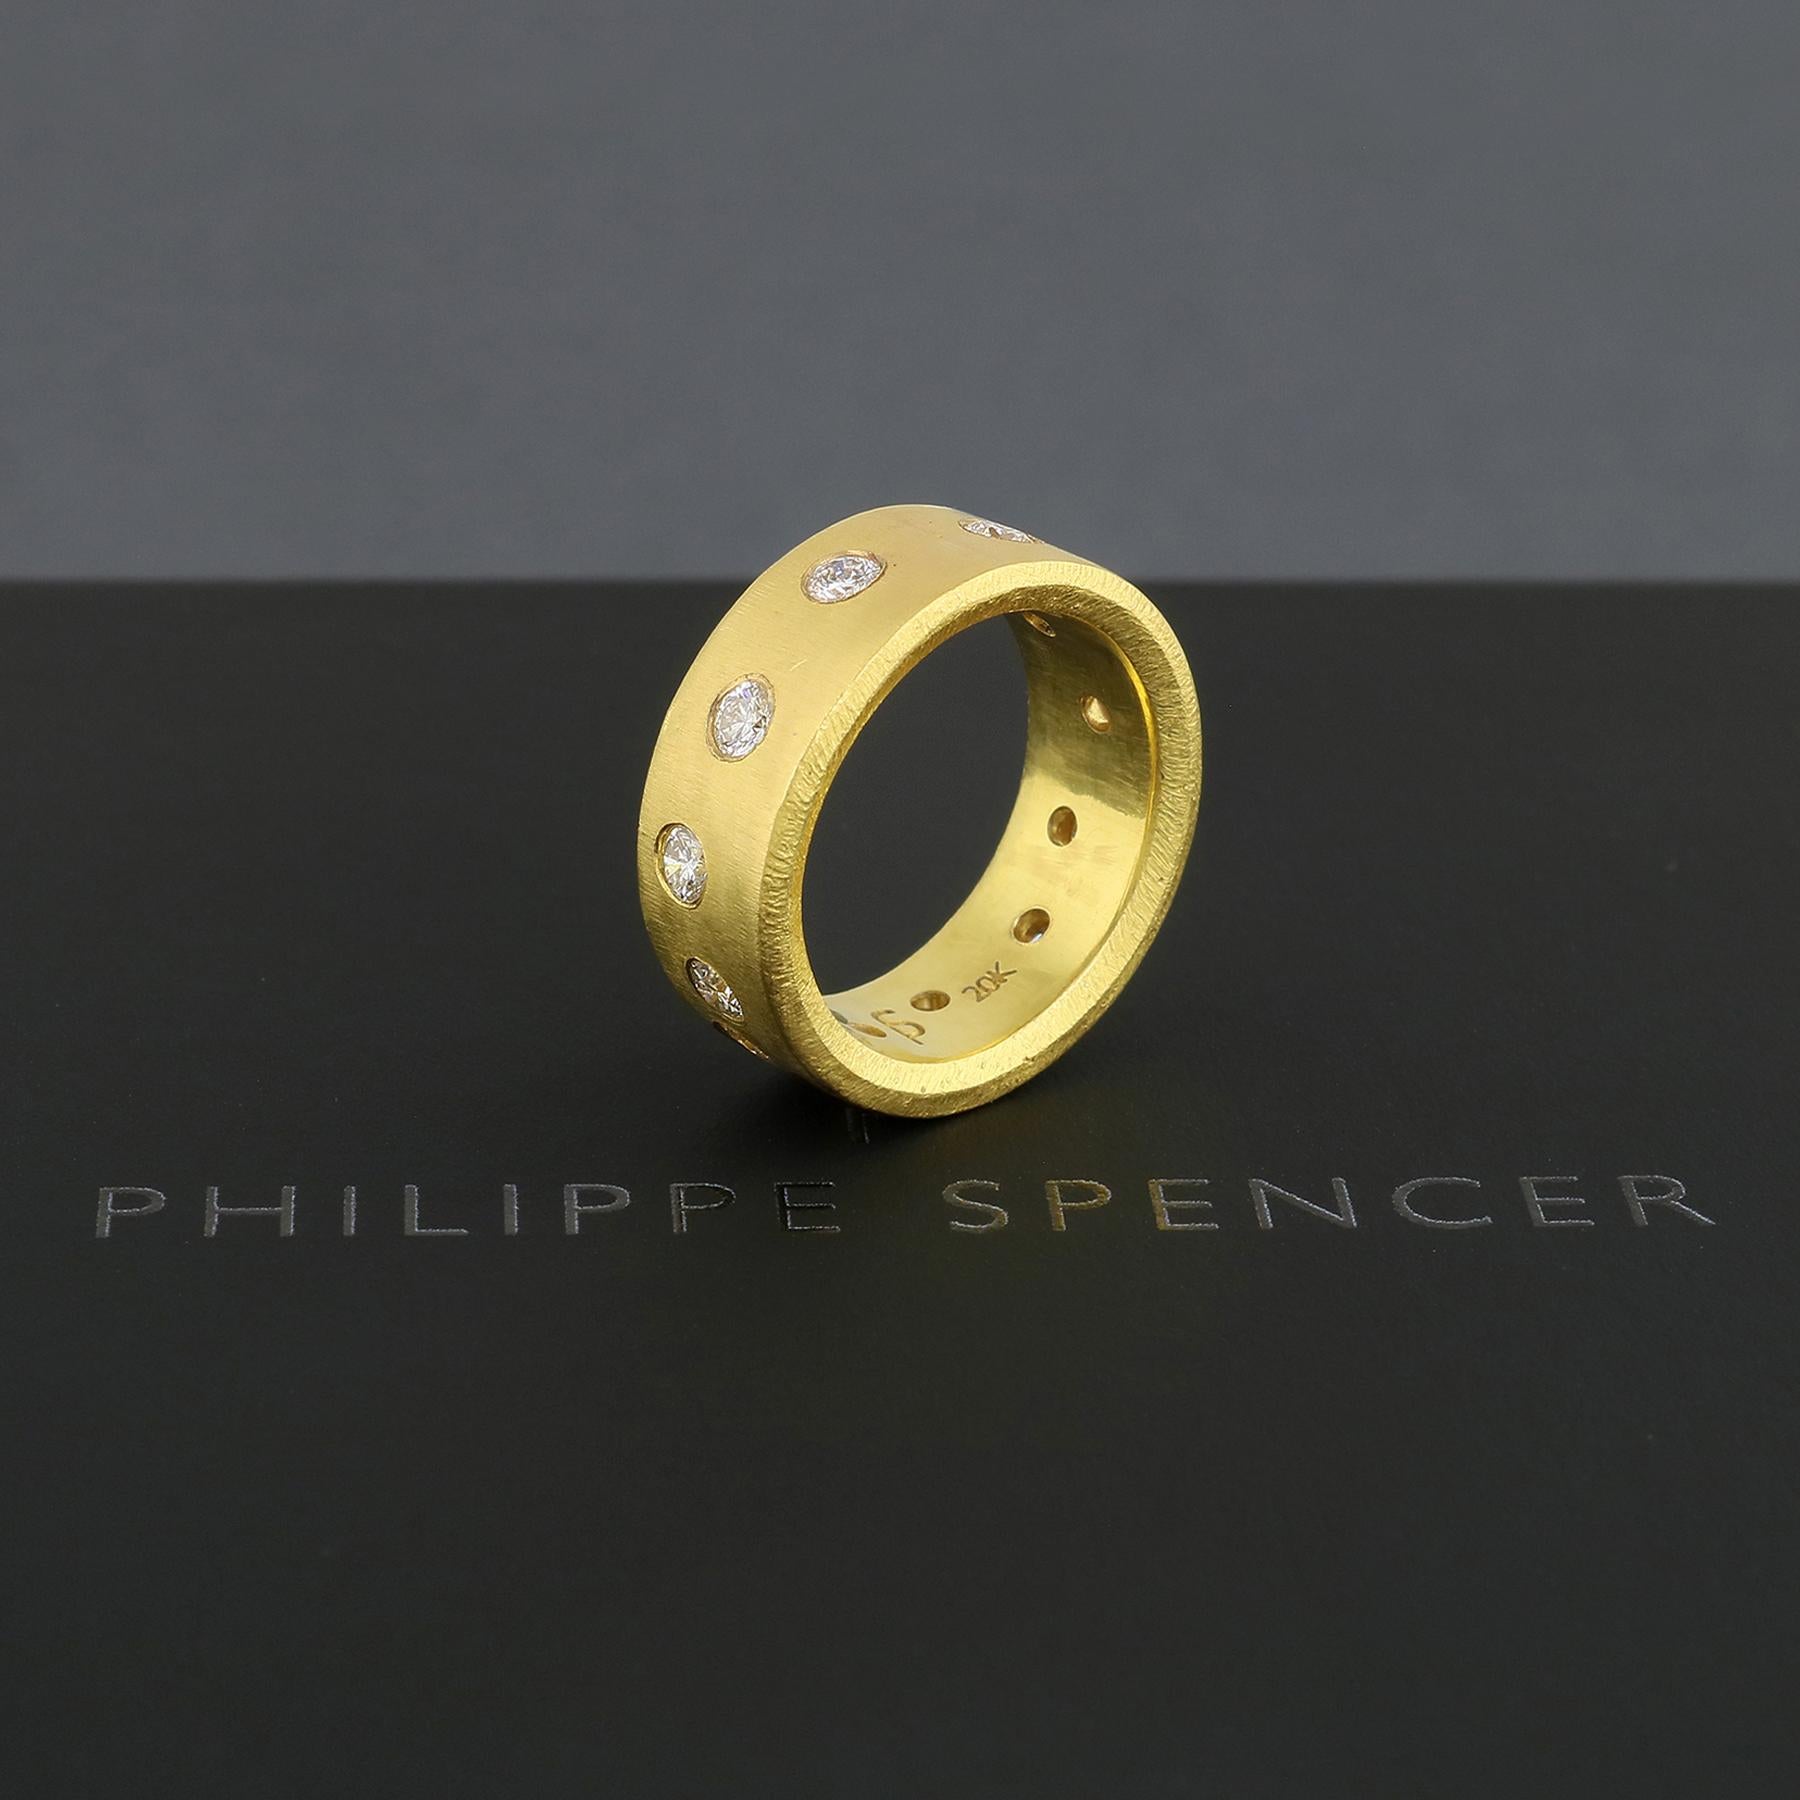 PHILIPPE SPENCER - 8 X 2mm Massiv 20K Gold Vollständig Handgeschmiedetes Statement Band mit 12 Farblosen (D-F)  2,8 mm (1,03 Karat insgesamt) Diamanten. Außen 